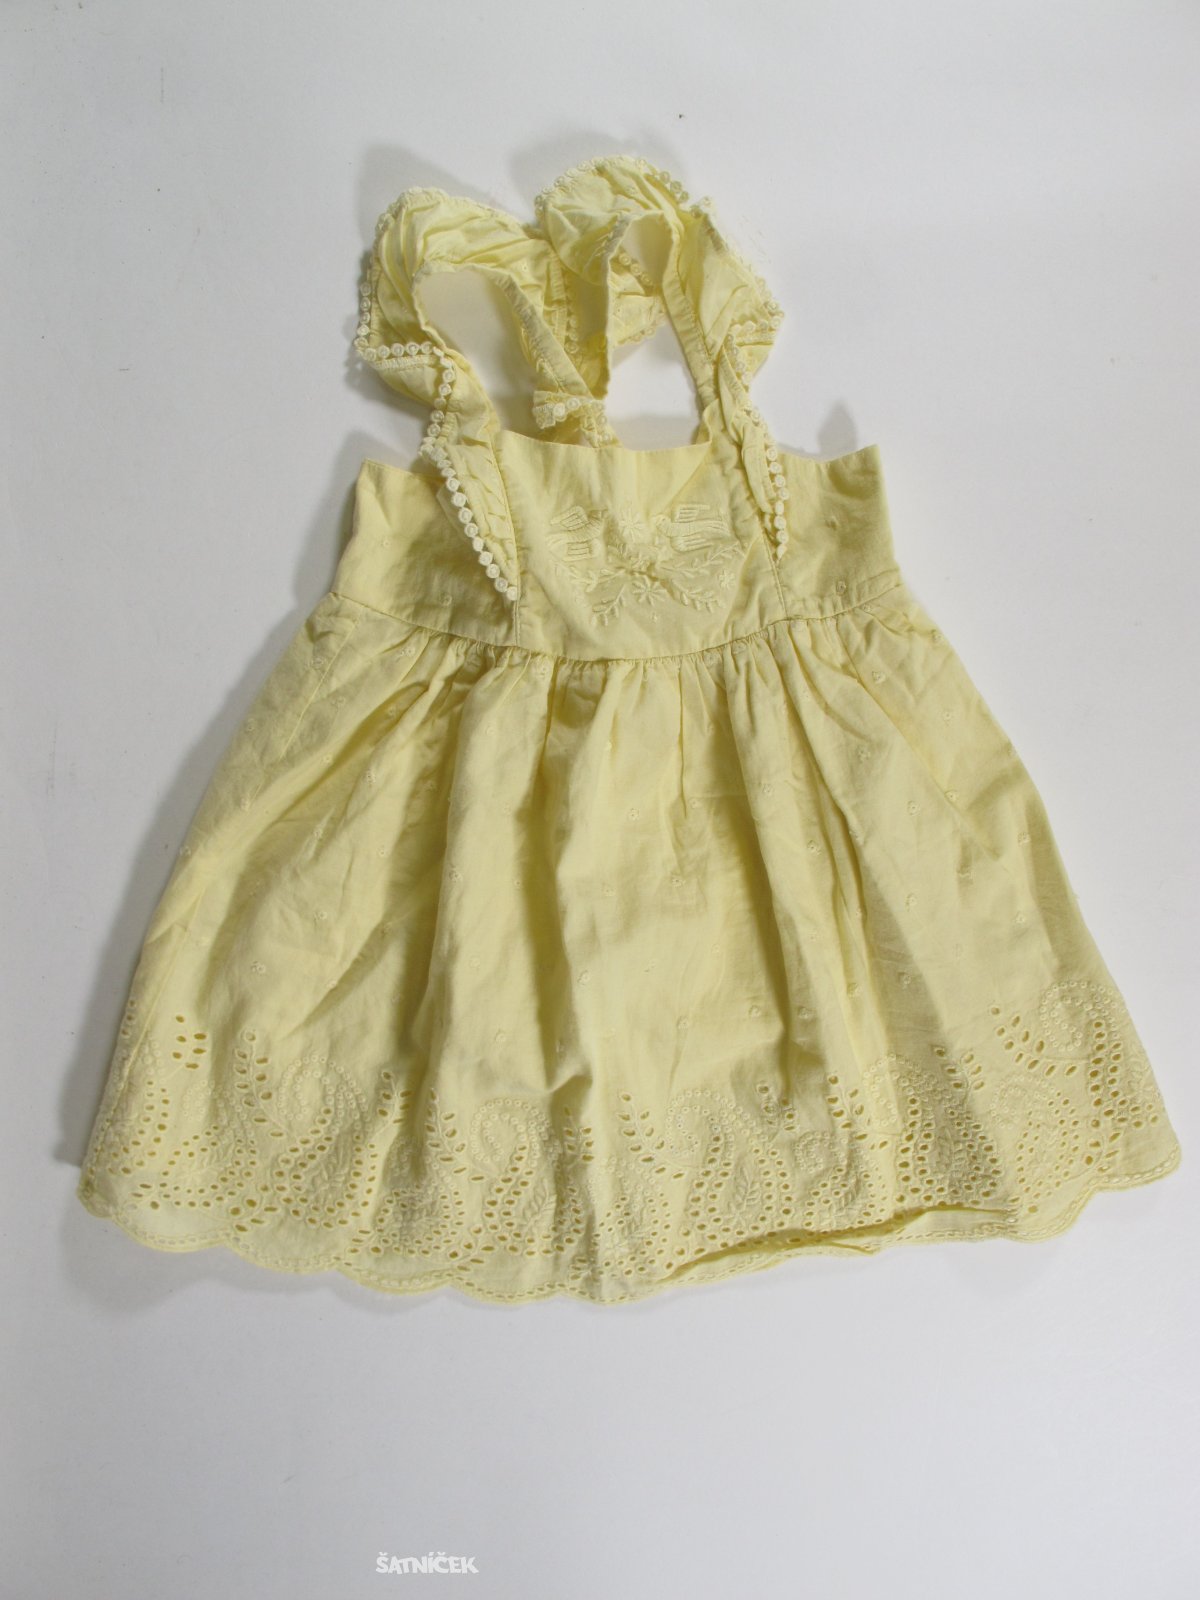 Šaty pro holky žluté  secondhand